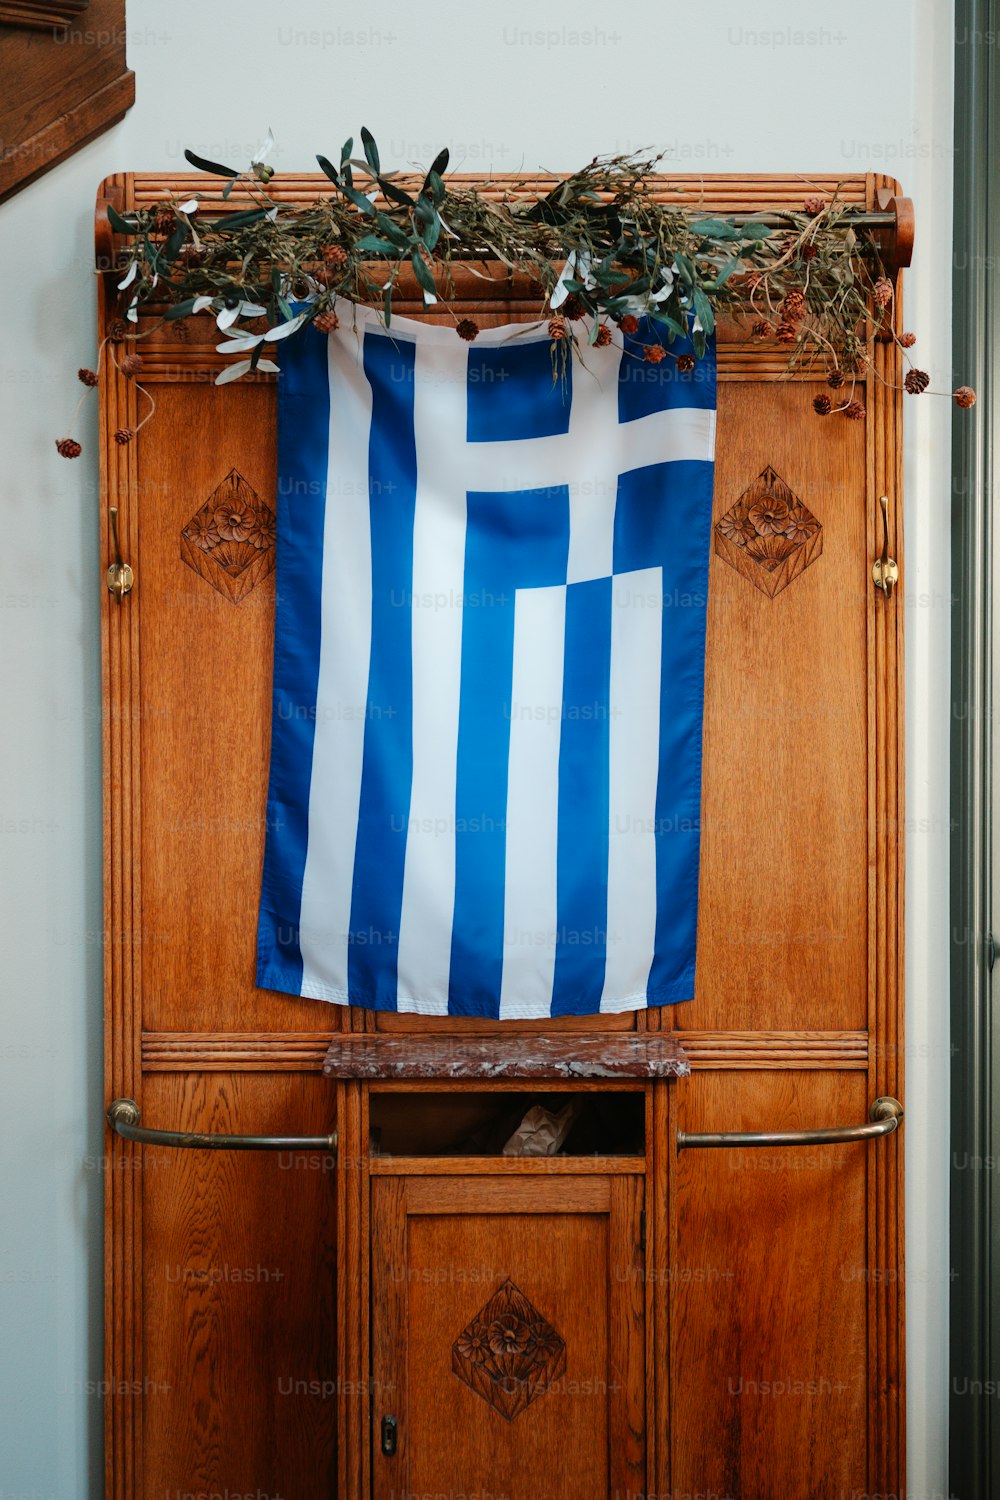 Una bandiera blu e bianca appesa su un armadio di legno